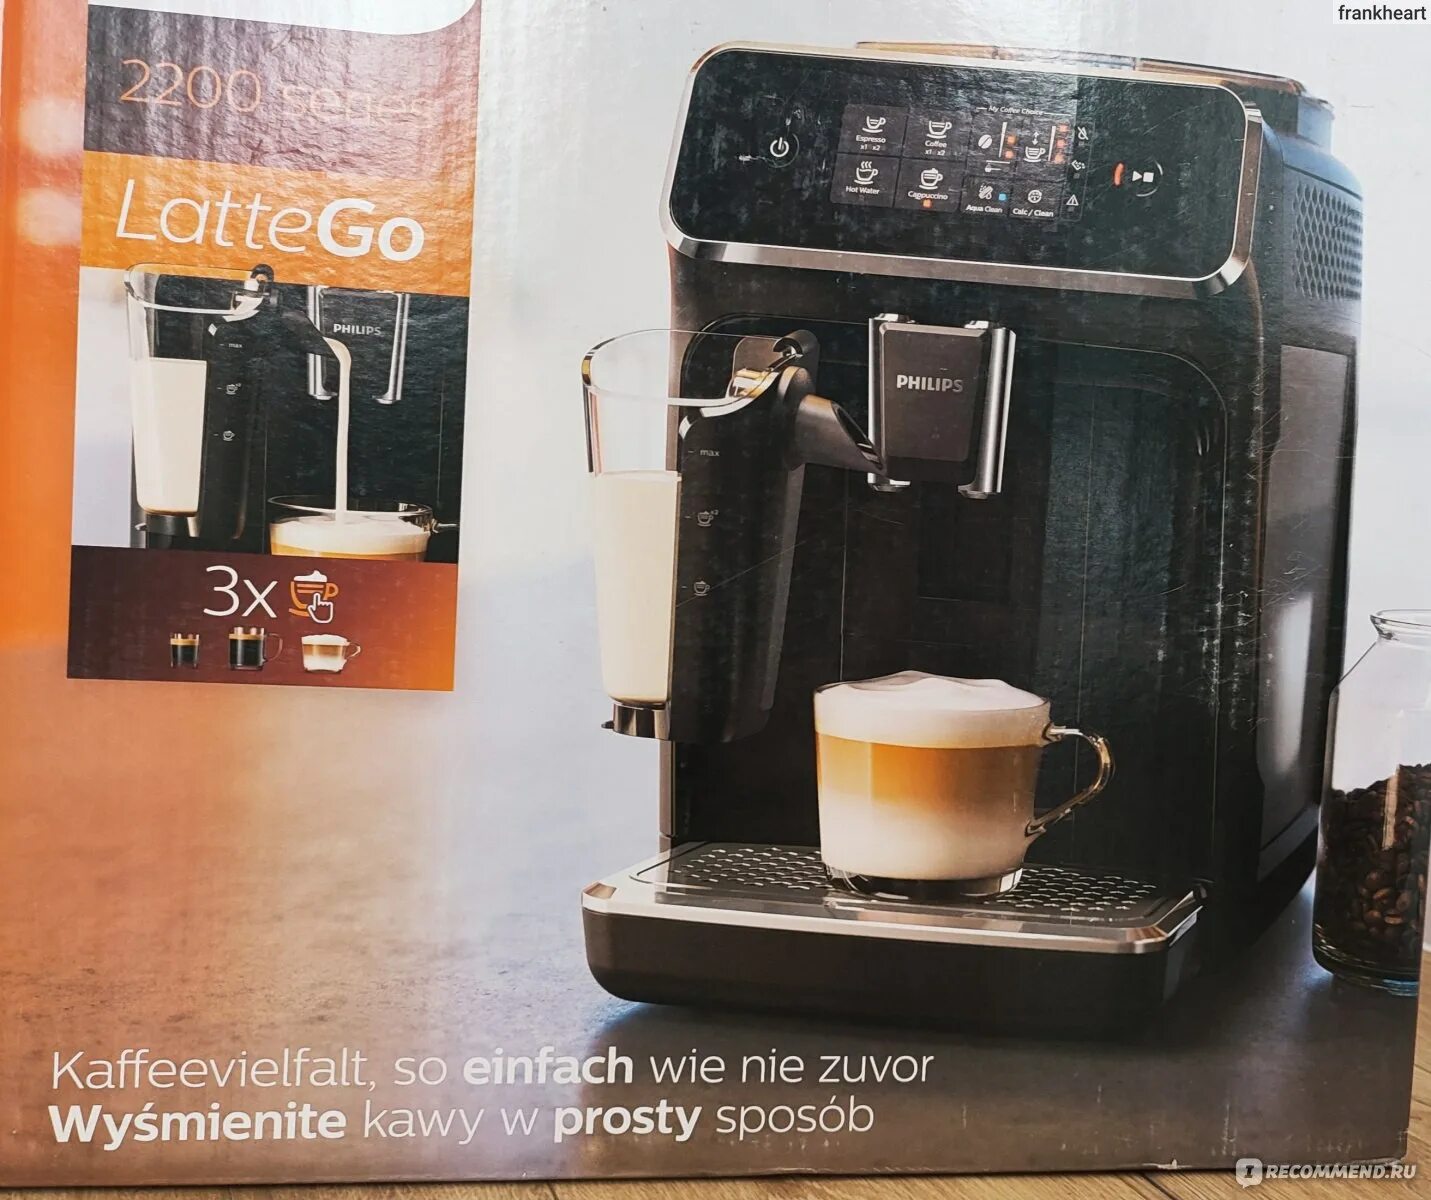 Кофемашина series 2200. Кофемашина Philips 2200 LATTEGO. Как подключить кофемашину Филипс 2200.